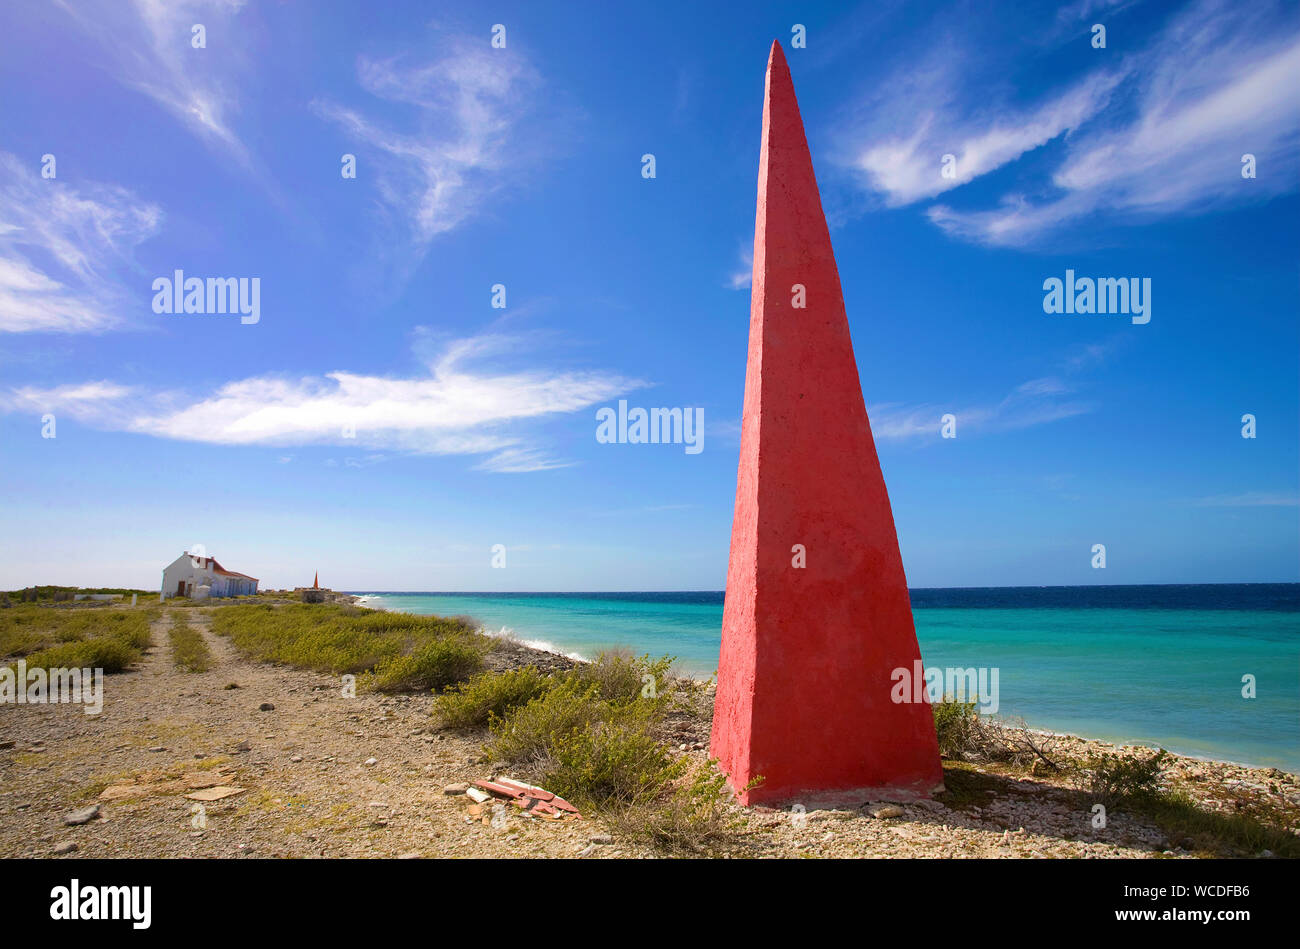 Obelisco al Red slave, costruito nel 1837 per la nave di orientamento, trasporto di sale, Bonaire, Antille olandesi Foto Stock